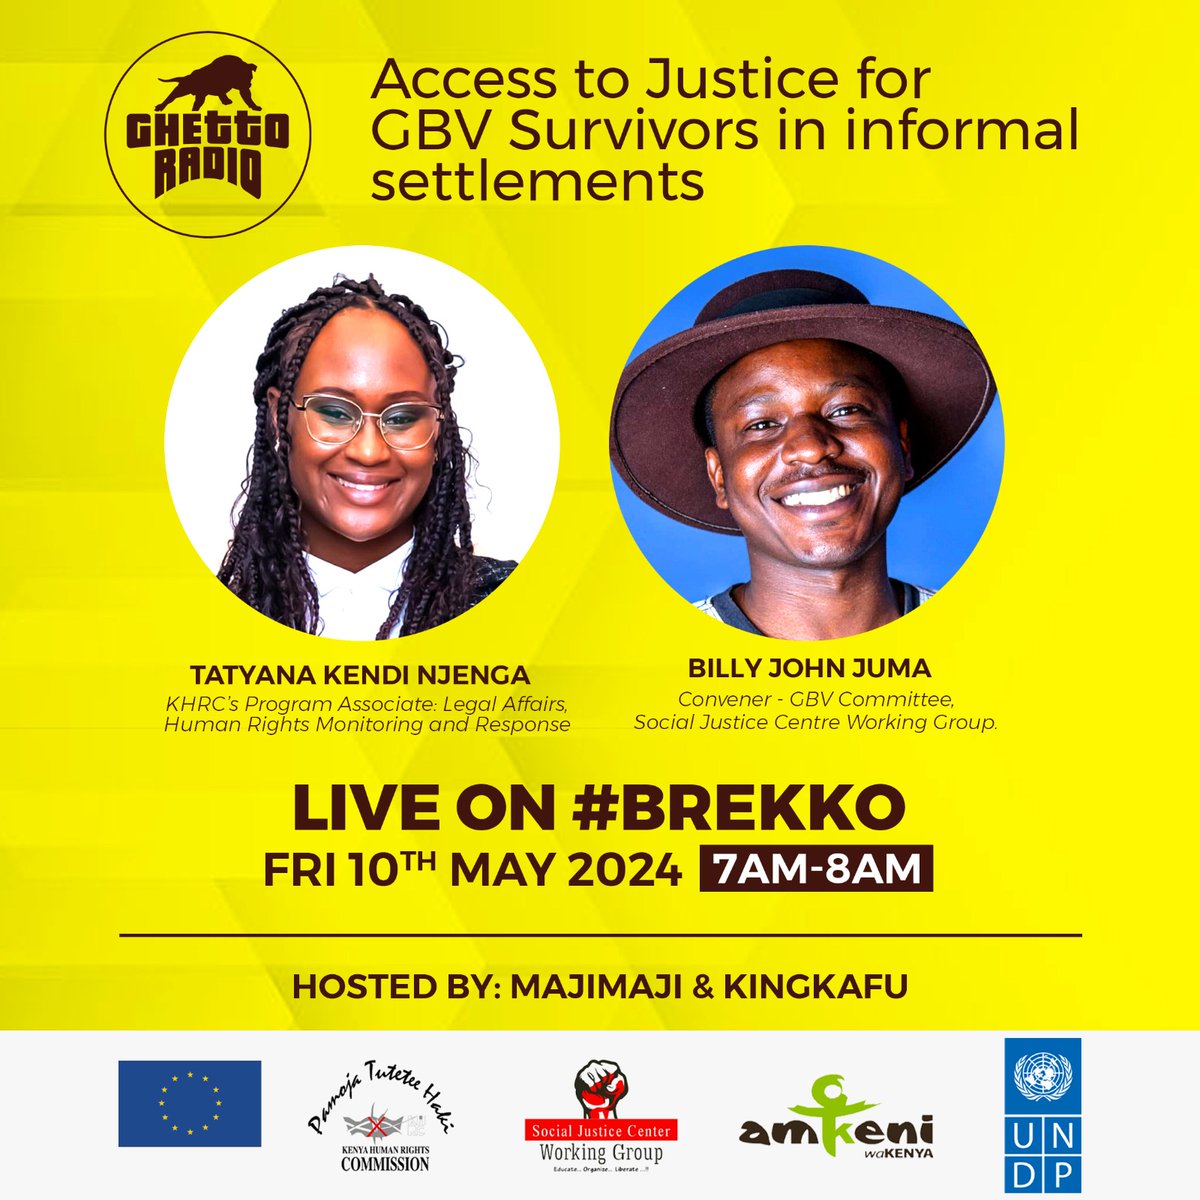 Huko mtaani GBV survivors wana access ya justice? Next hour we engage @thekhrc on #Brekko